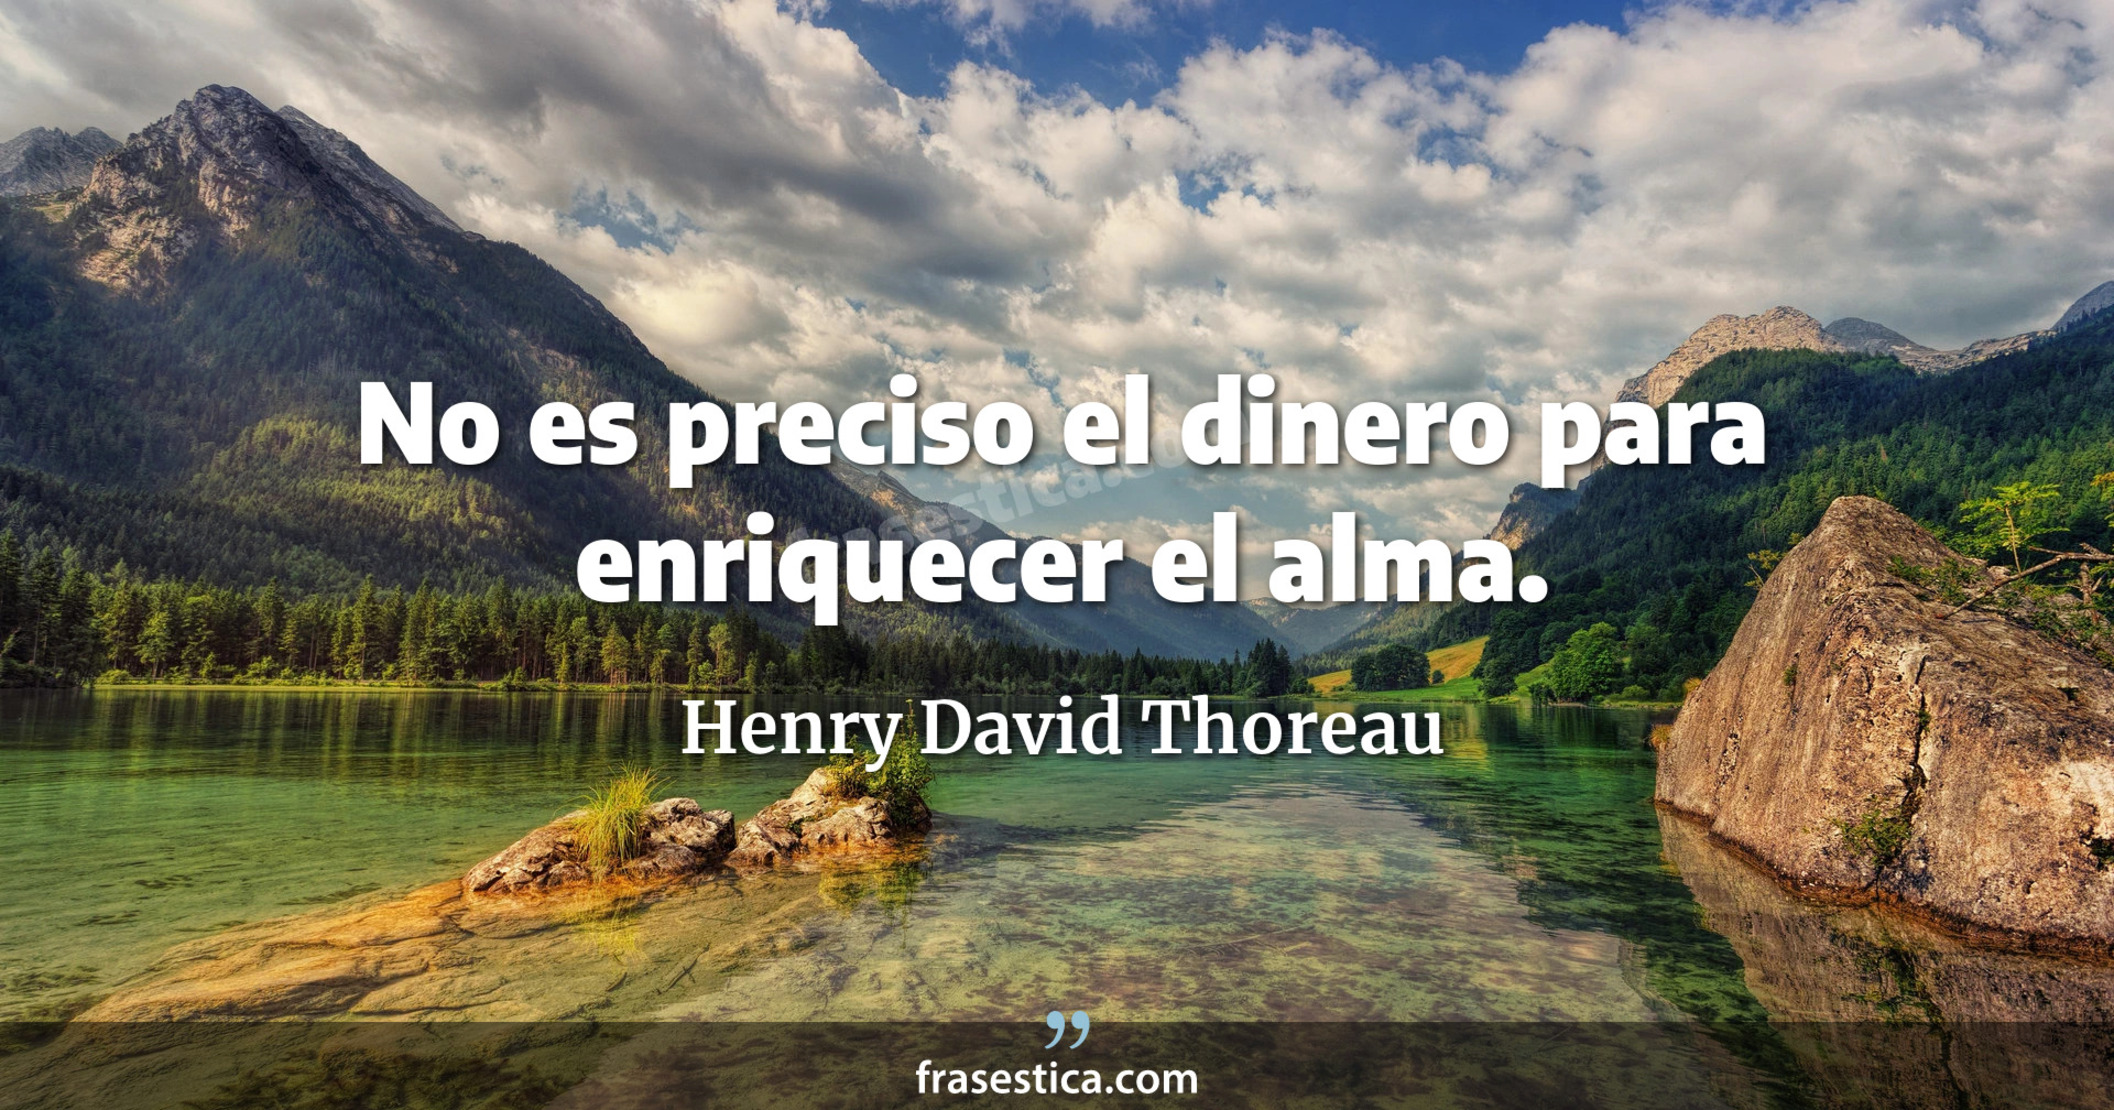 No es preciso el dinero para enriquecer el alma. - Henry David Thoreau